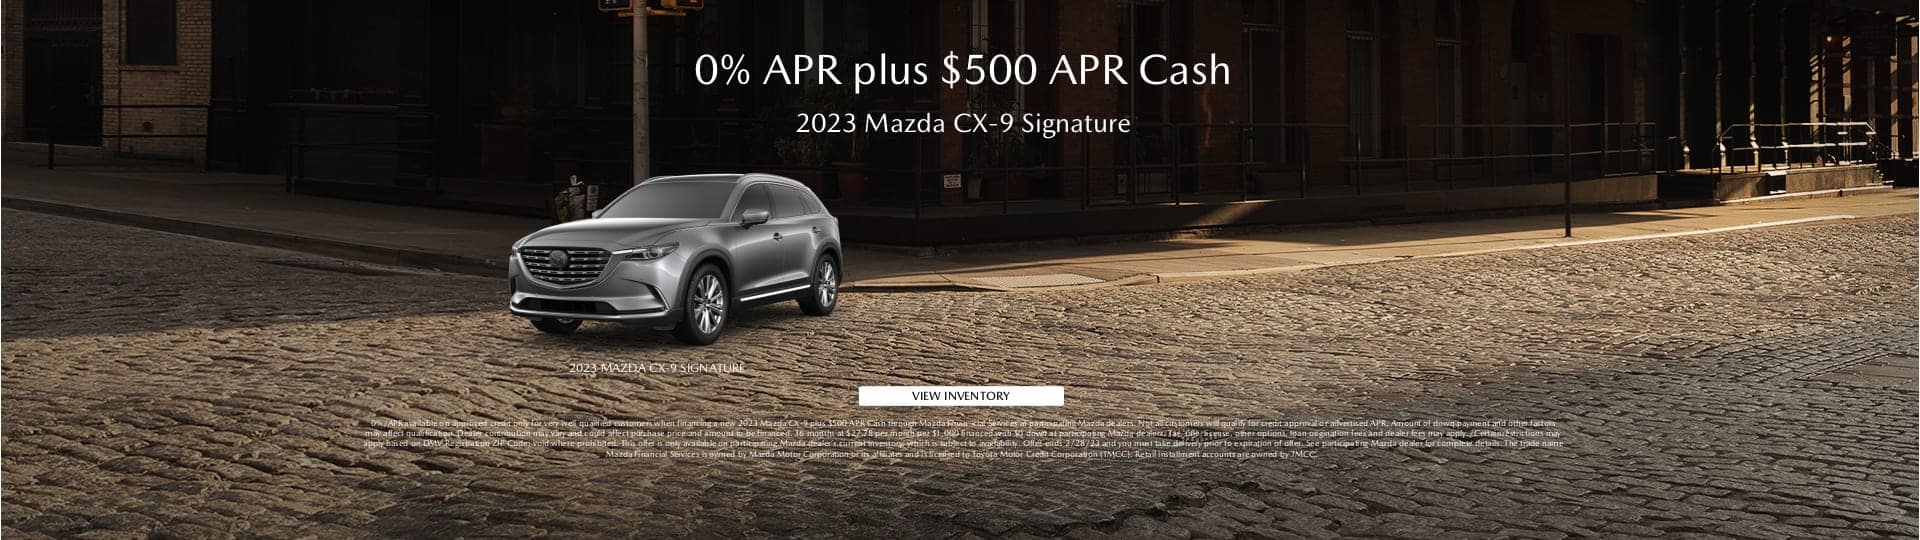 2023 Mazda CX-9 offer